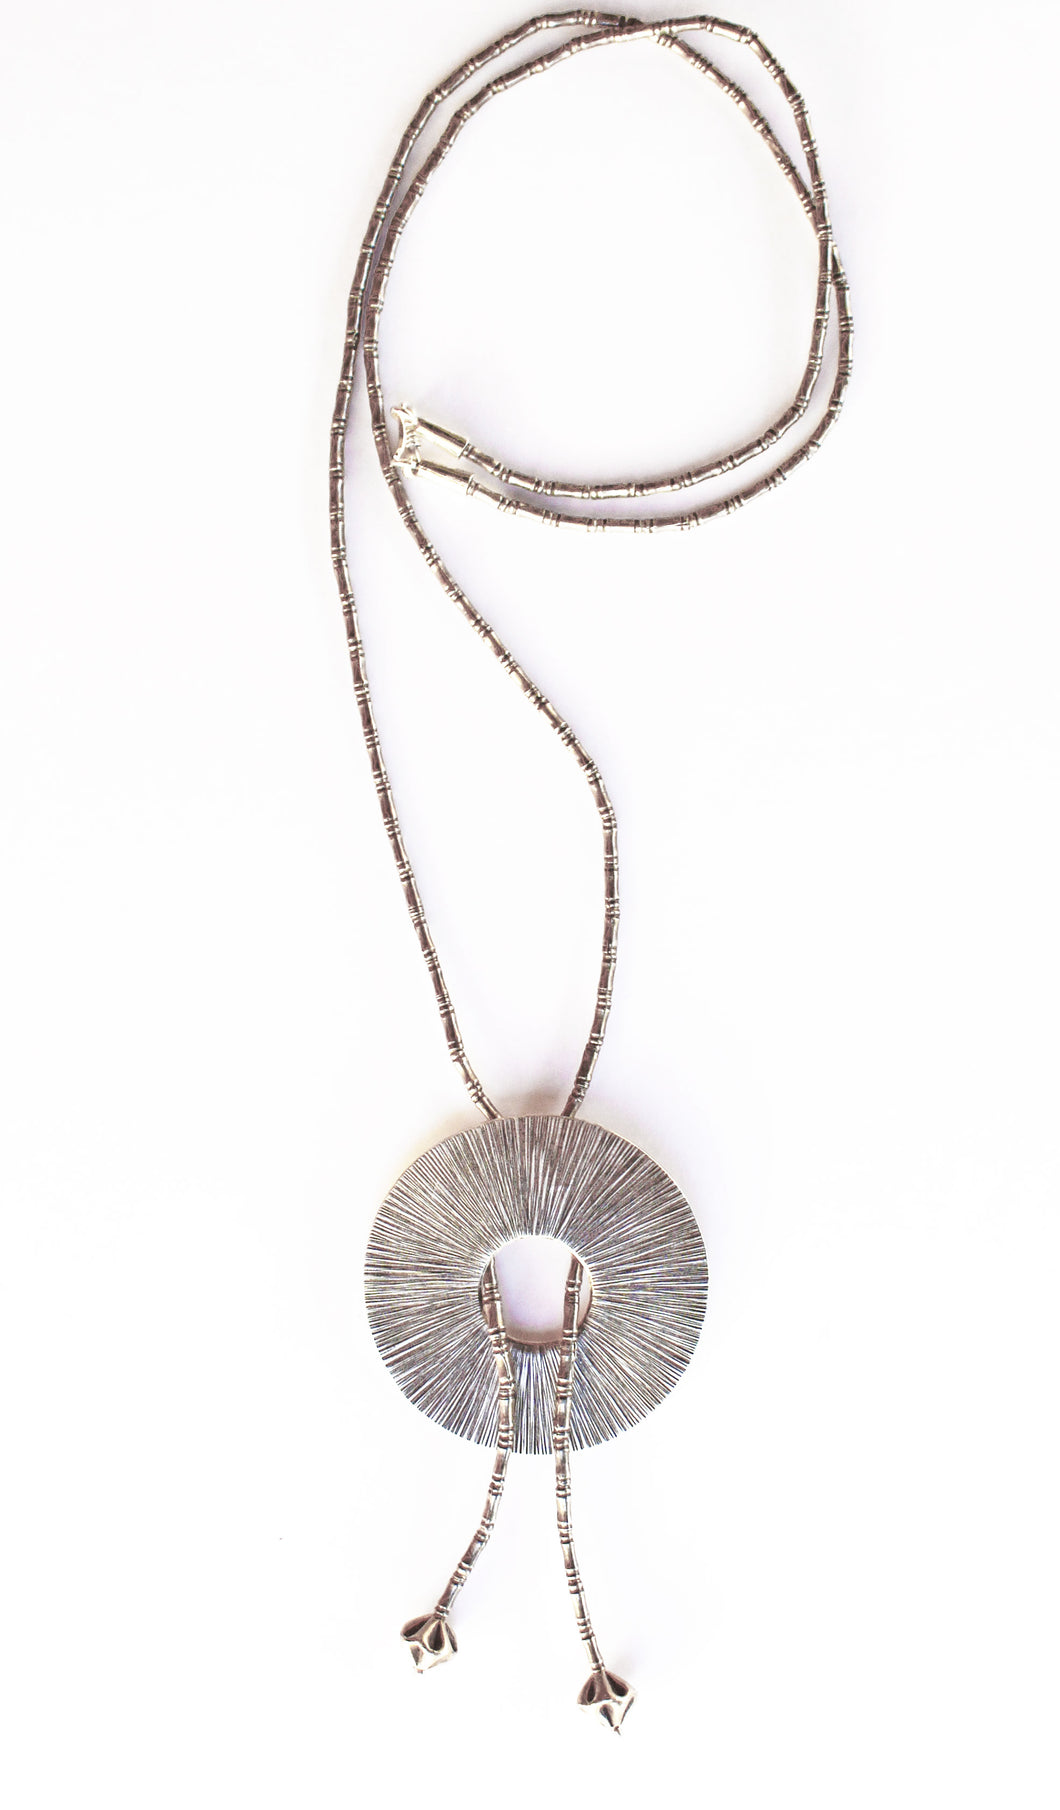 Hill Tribe Bolo Necklace, Pure Silver